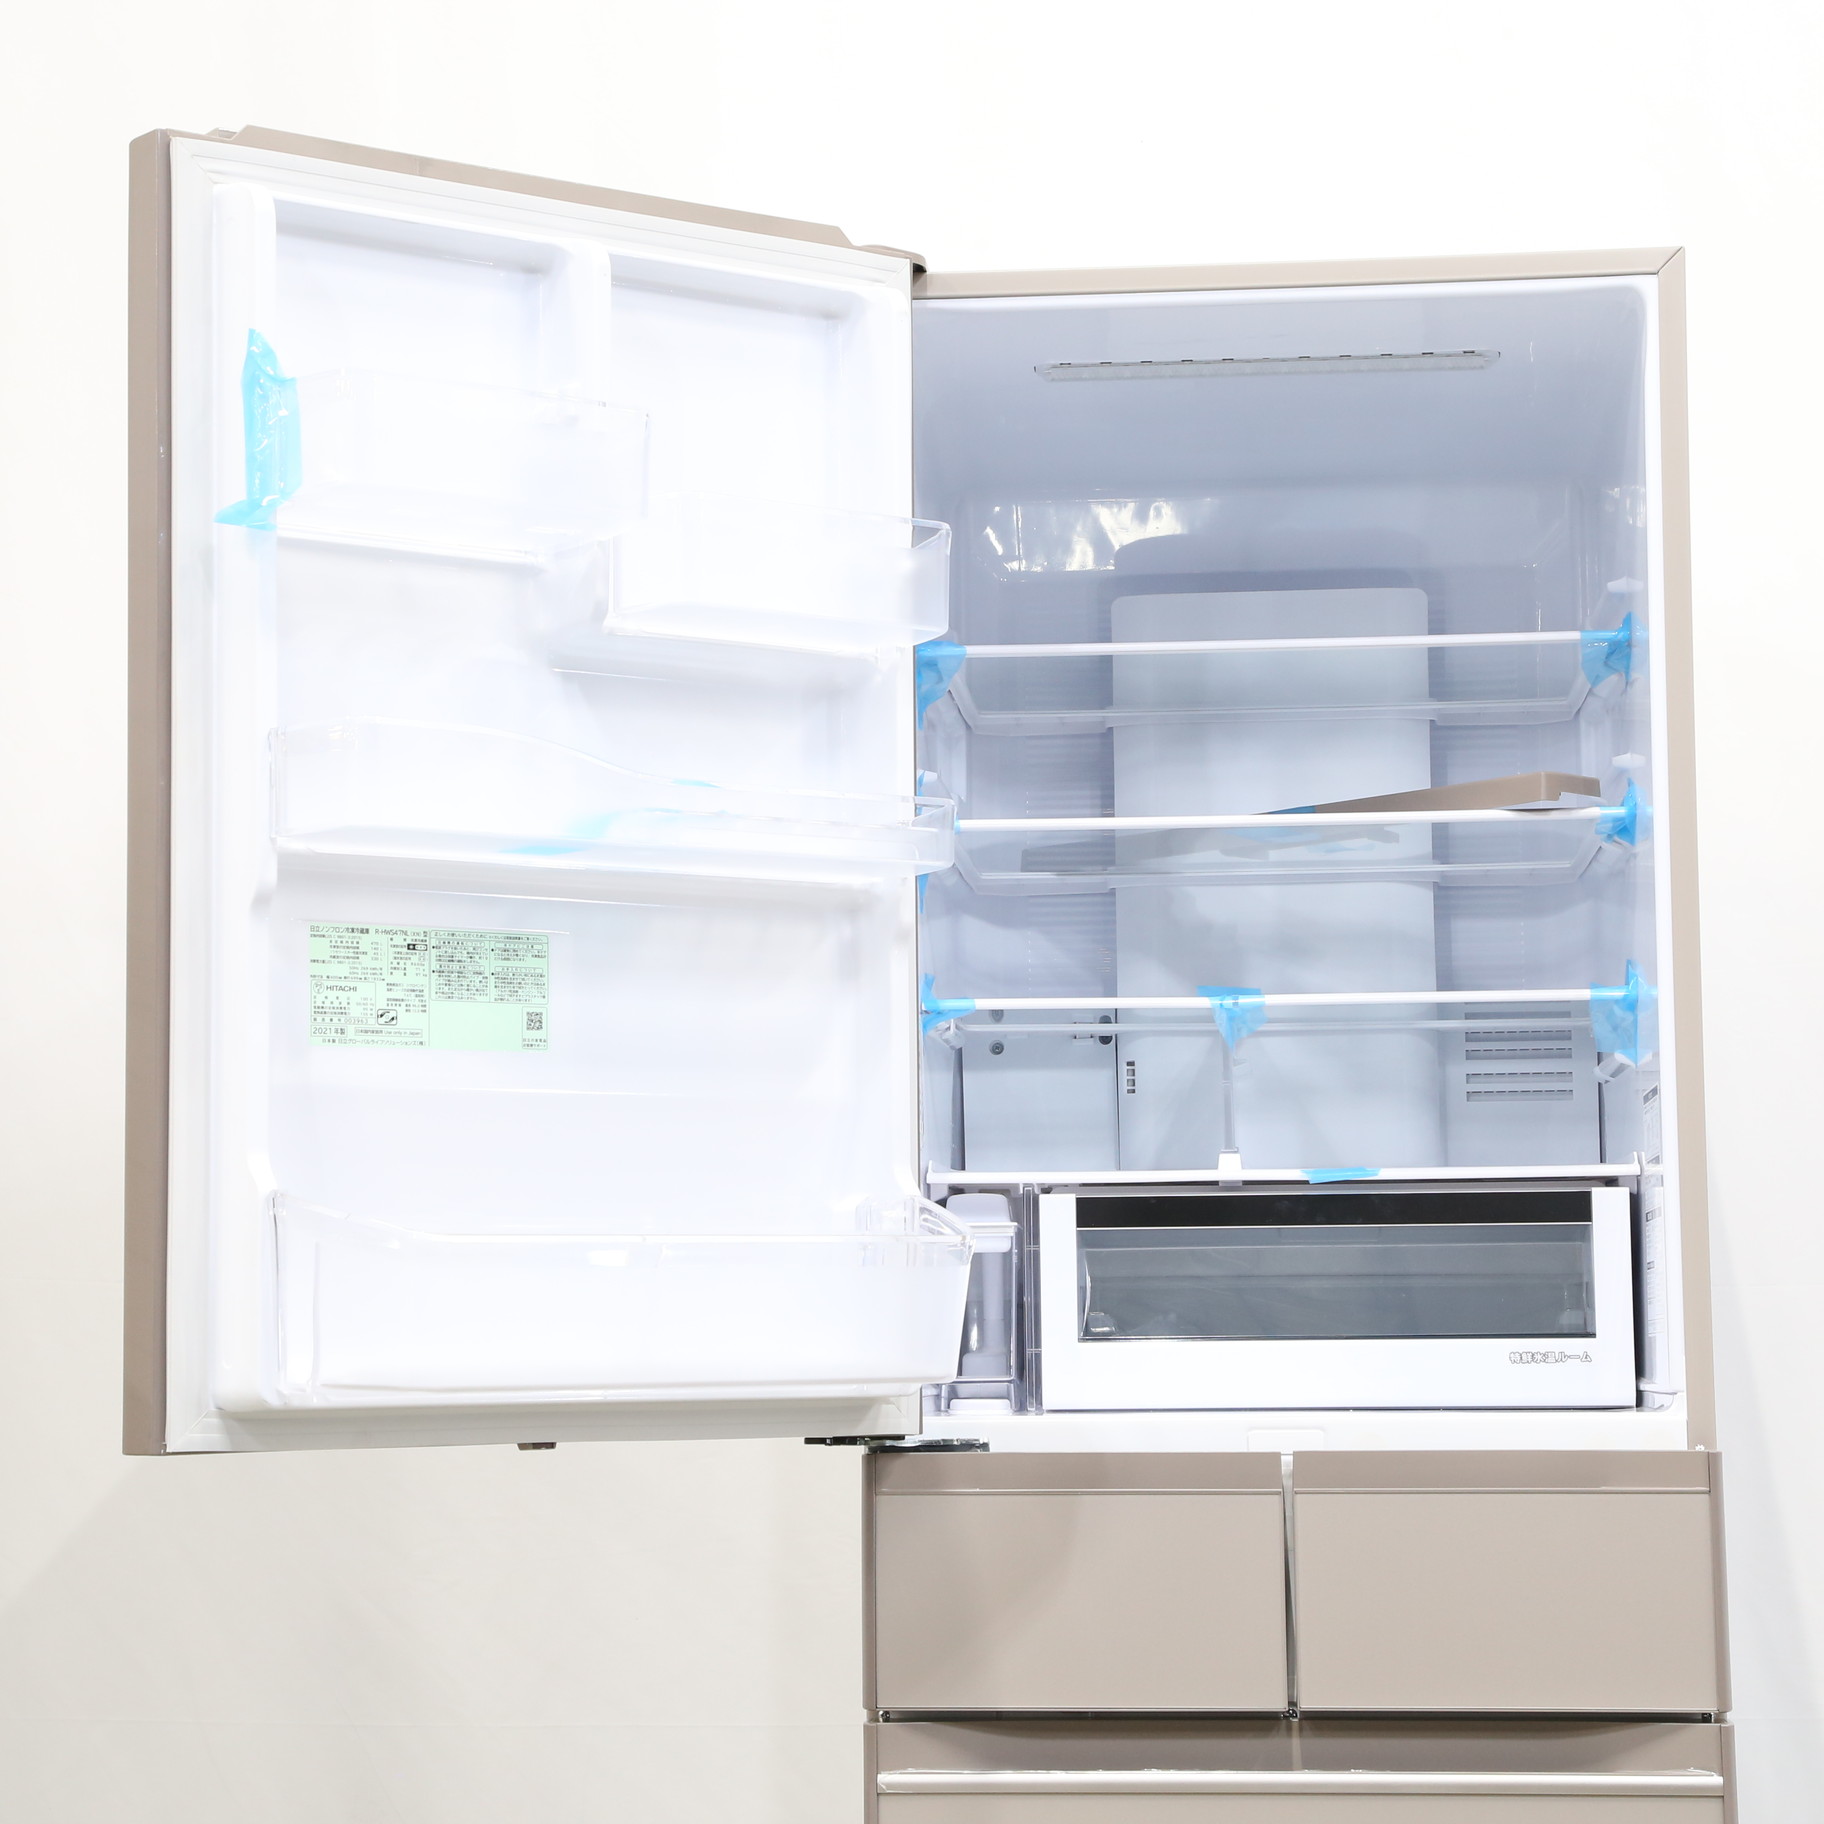 送料込み 日立 冷凍冷蔵庫  2021年製 470L R-HWS47NL XNちなみに7万即決は厳しいですか